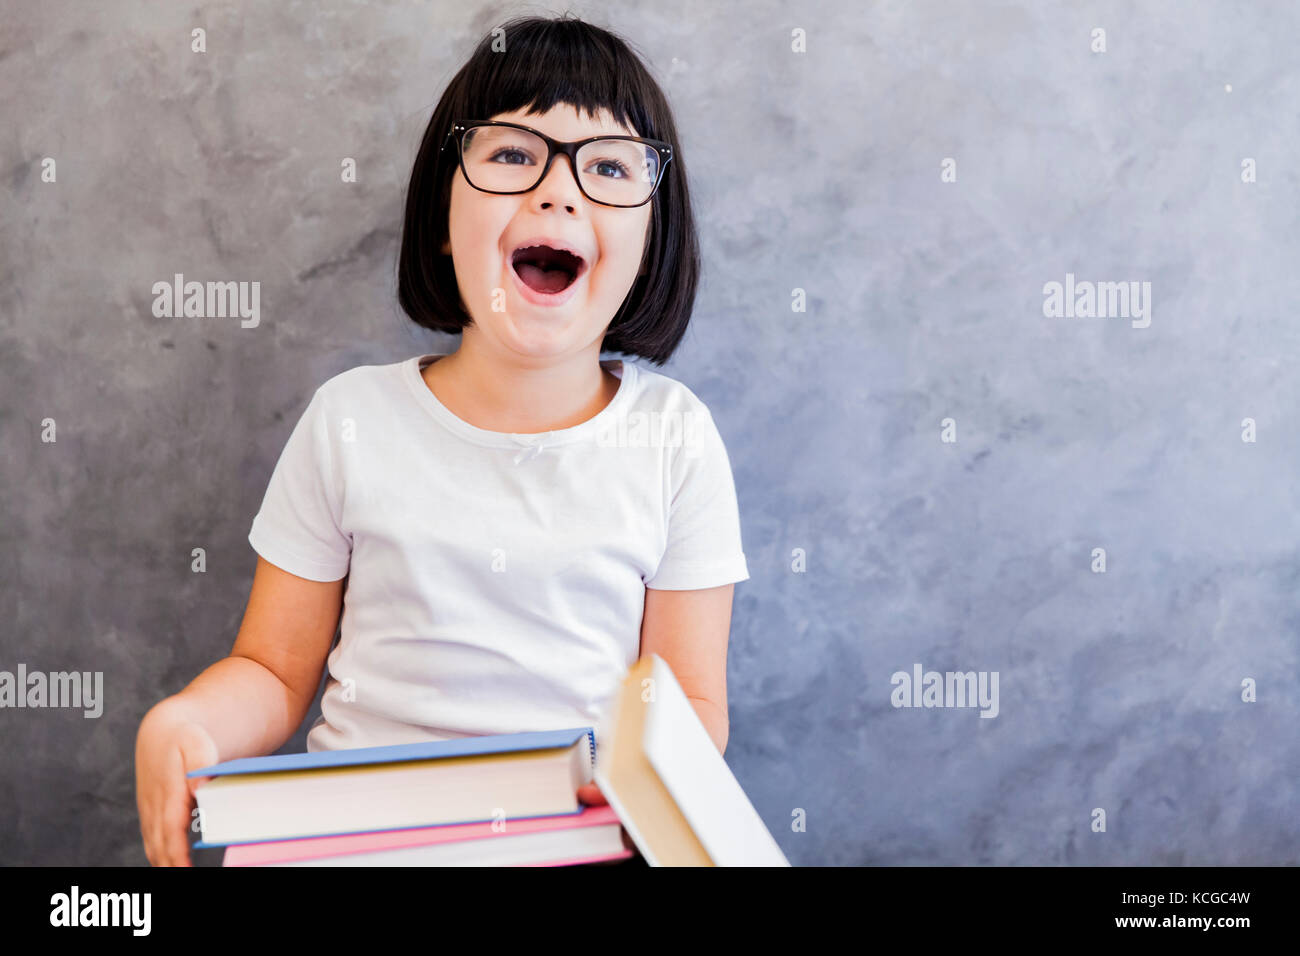 Jolie petite fille aux cheveux noir verres holding books par le mur Banque D'Images